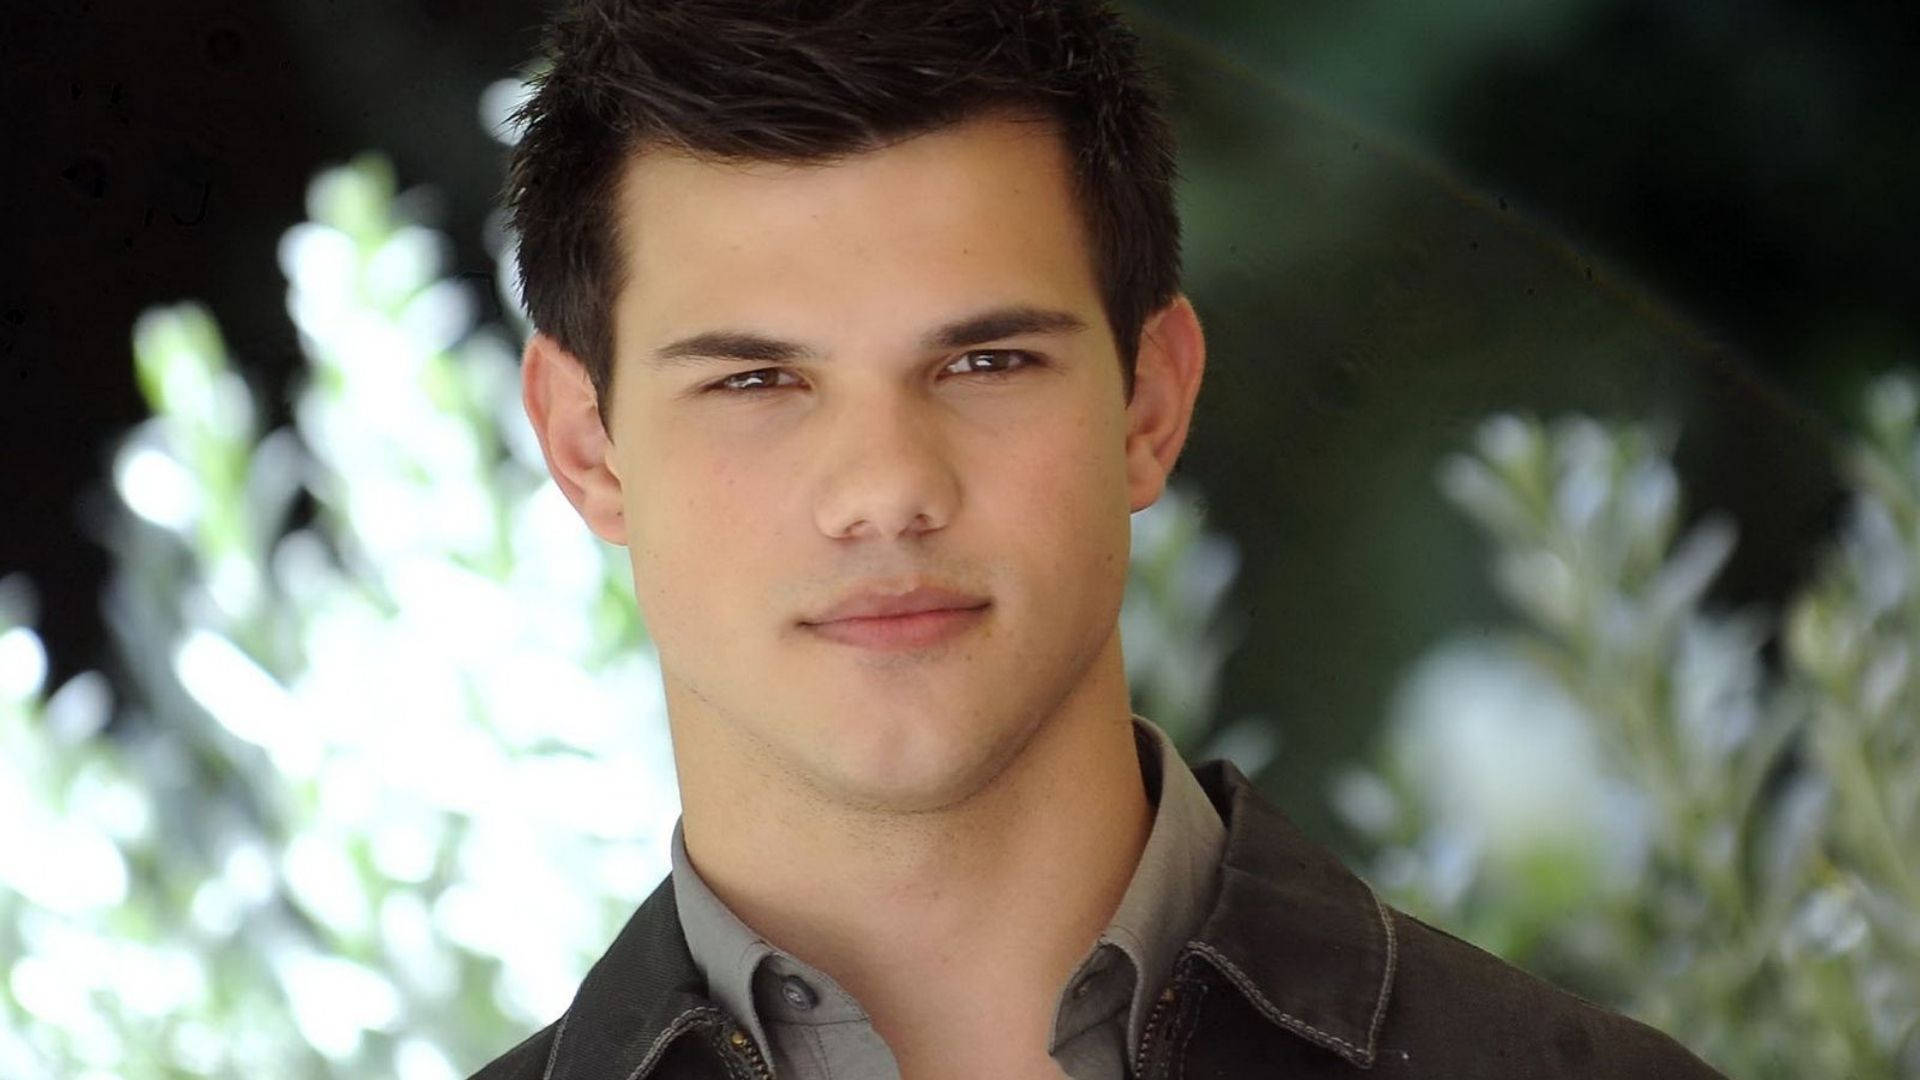 Hübscherschauspieler Taylor Lautner Wallpaper